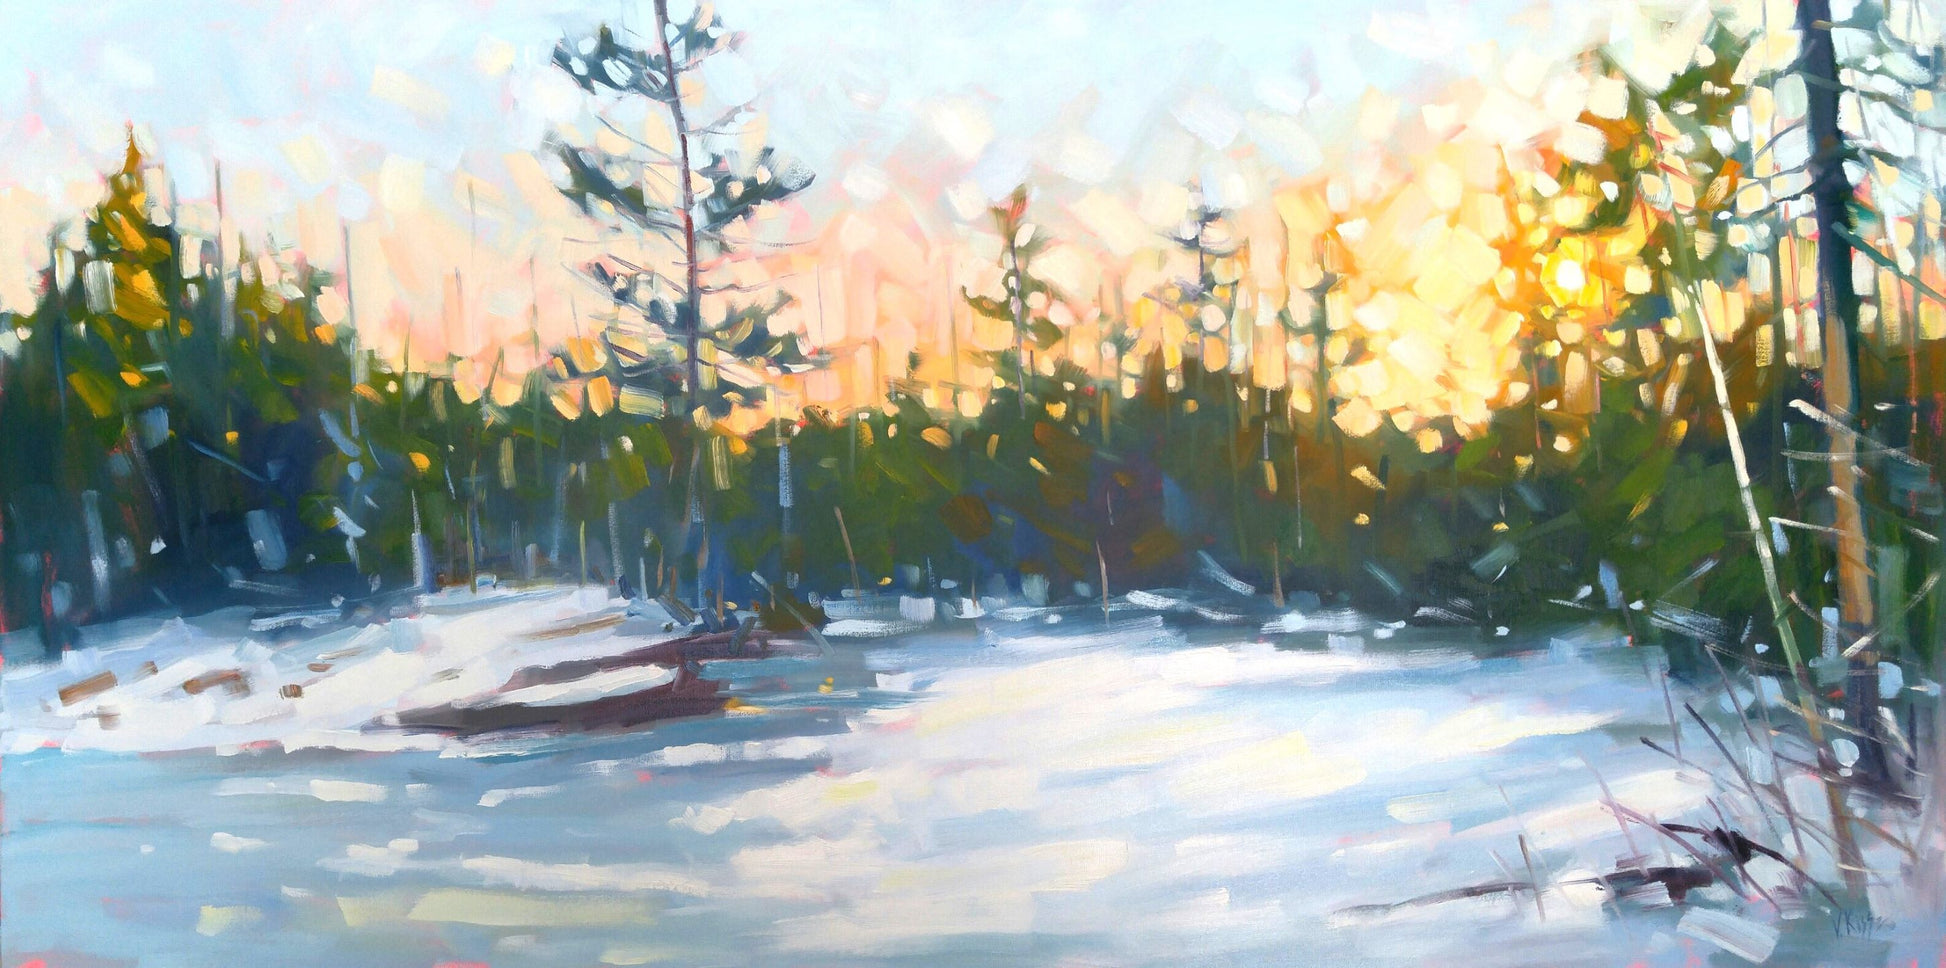 Original artwork for sale Modern Impressionistic Landscape by Canadian artist Vera Kisseleva